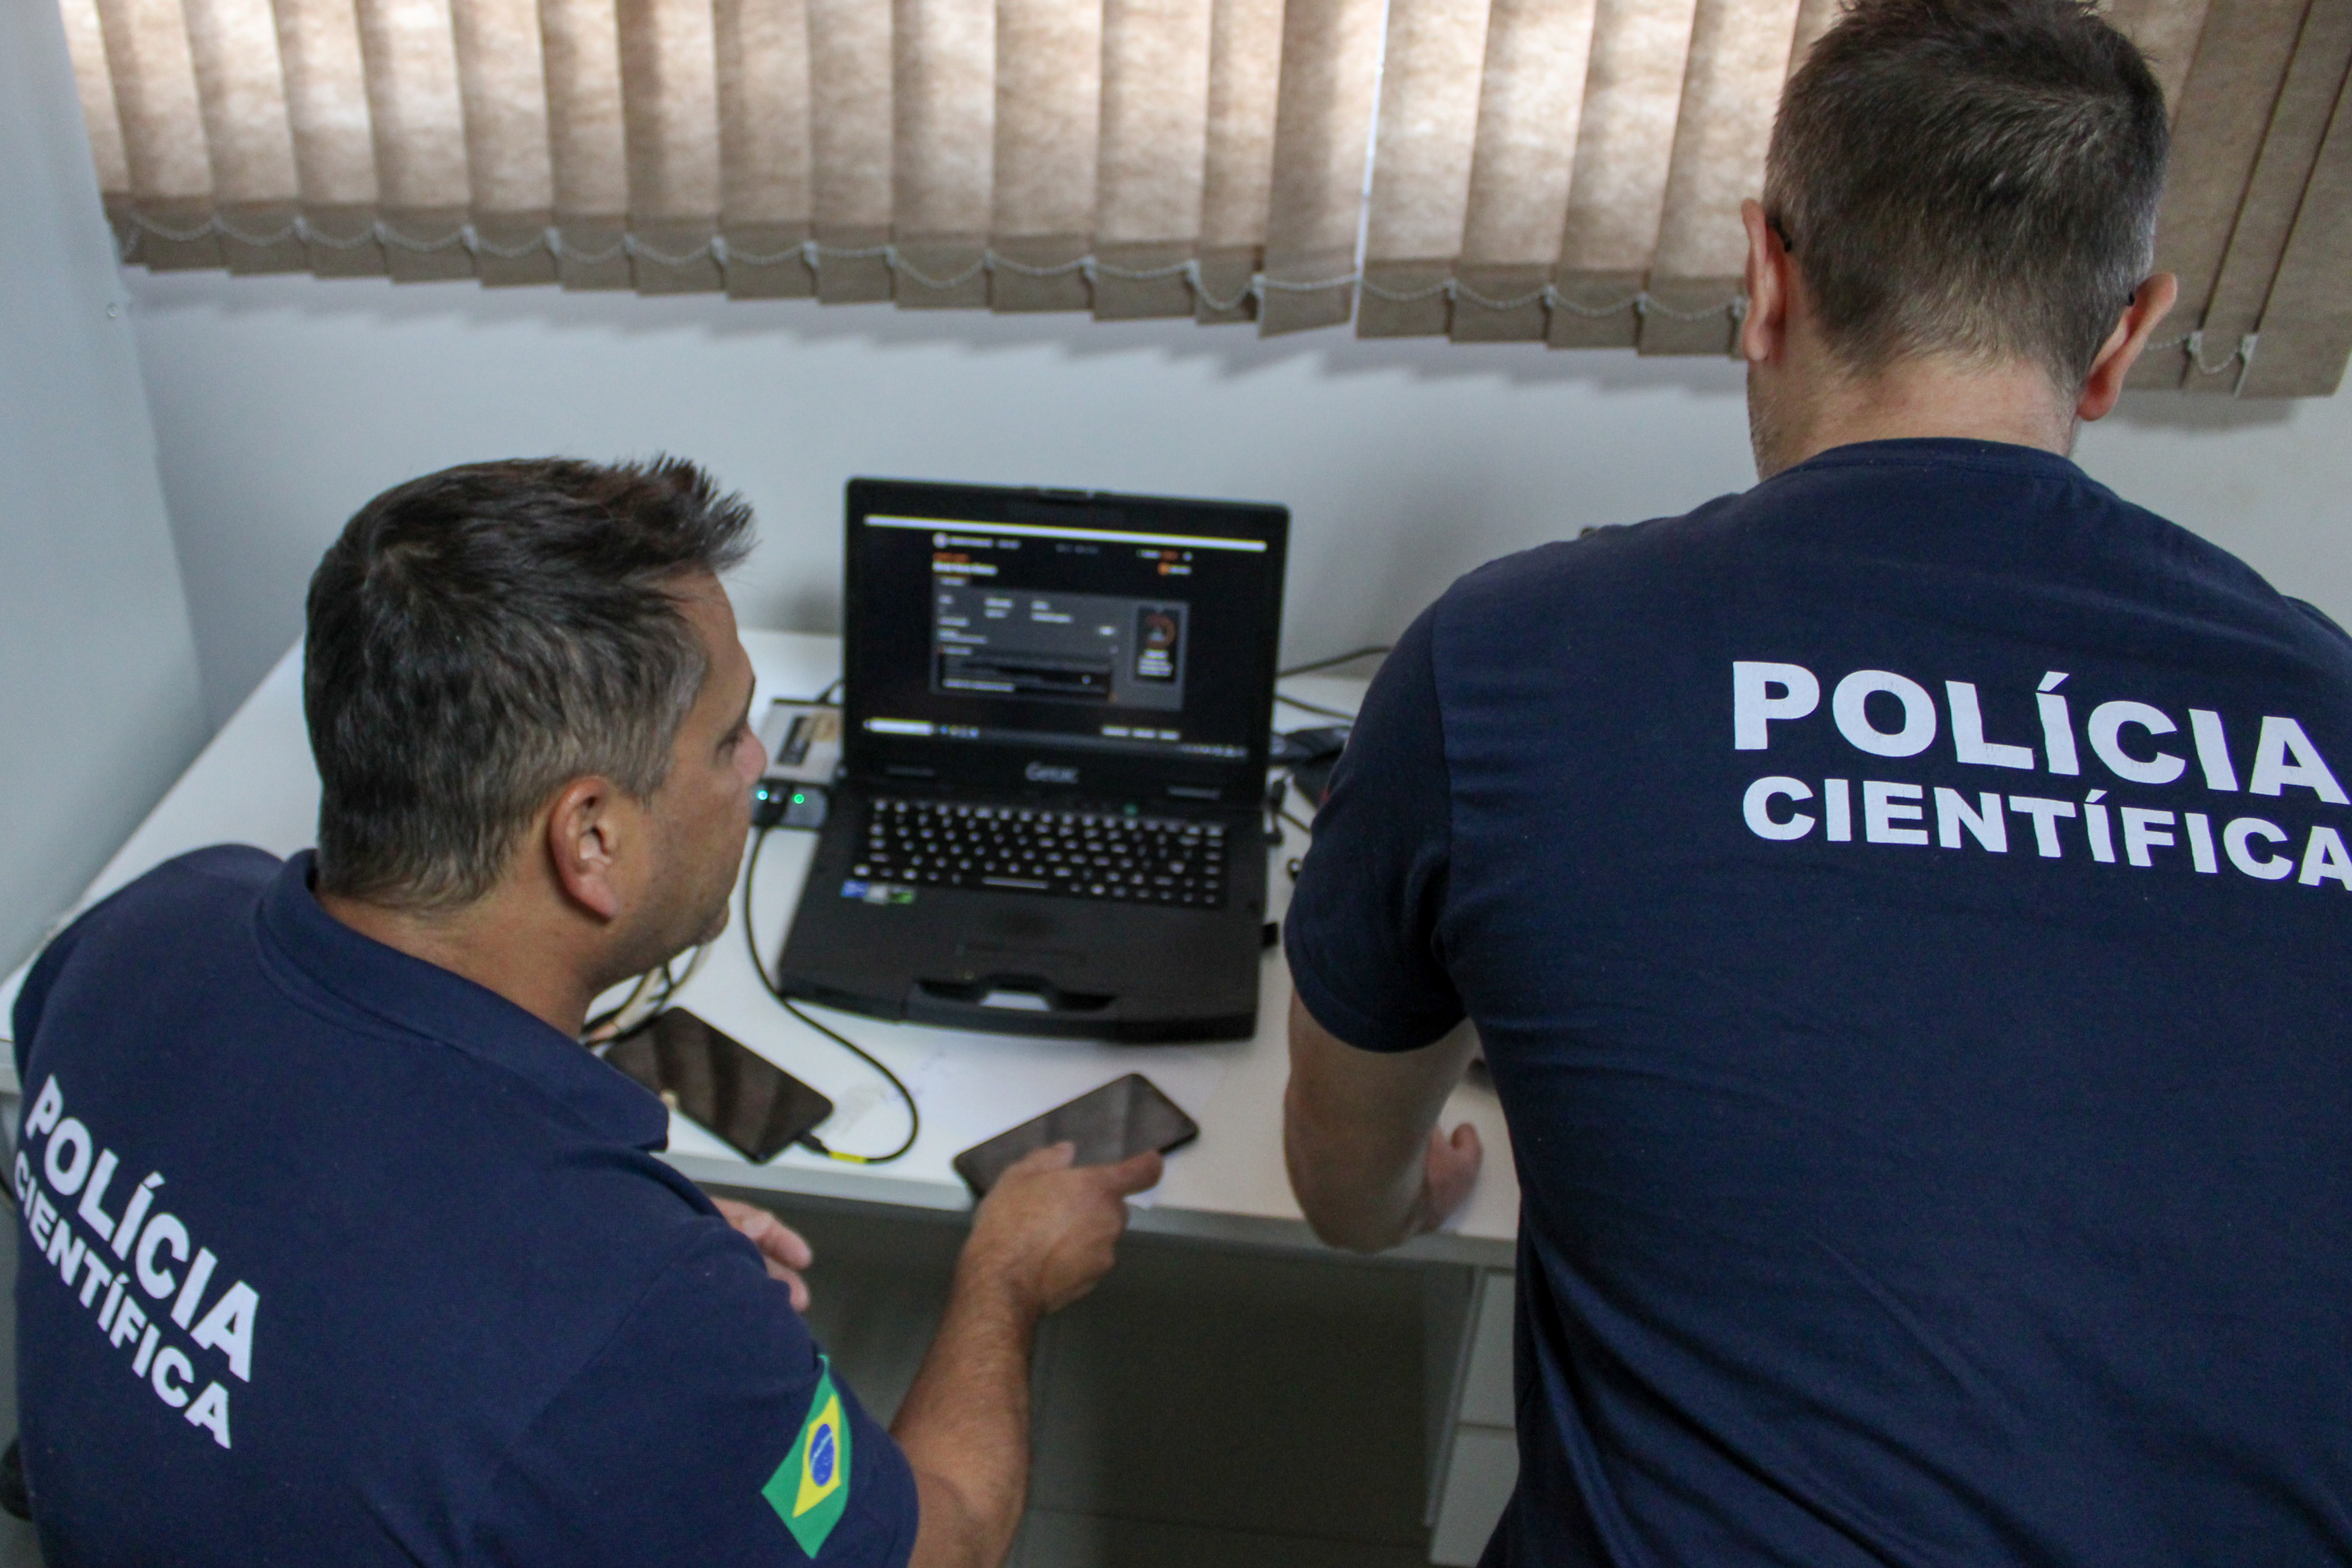 Polícia Científica de Santa Catarina contribui para a Operação “Caminhos Seguros” na proteção de crianças e adolescentes